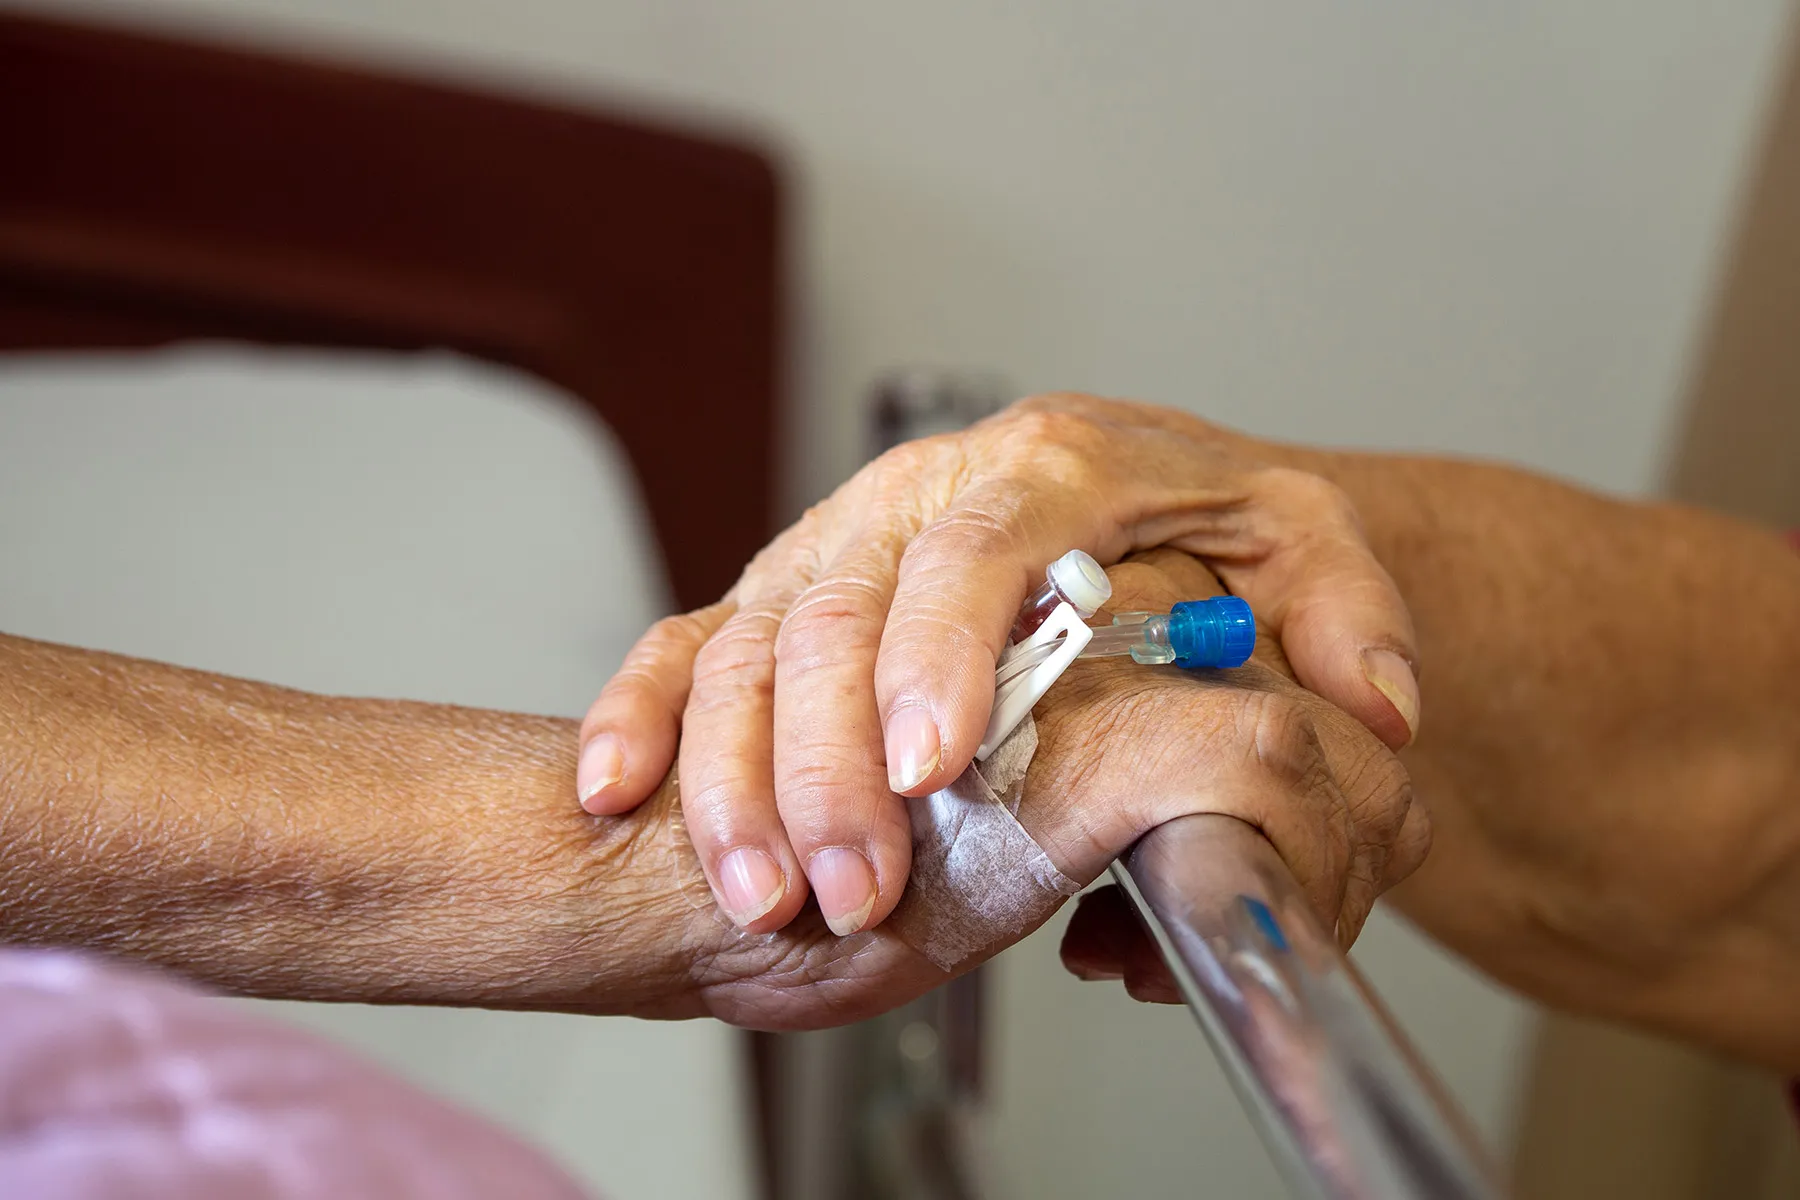 caregiver holding hand of patientcaregiver holding